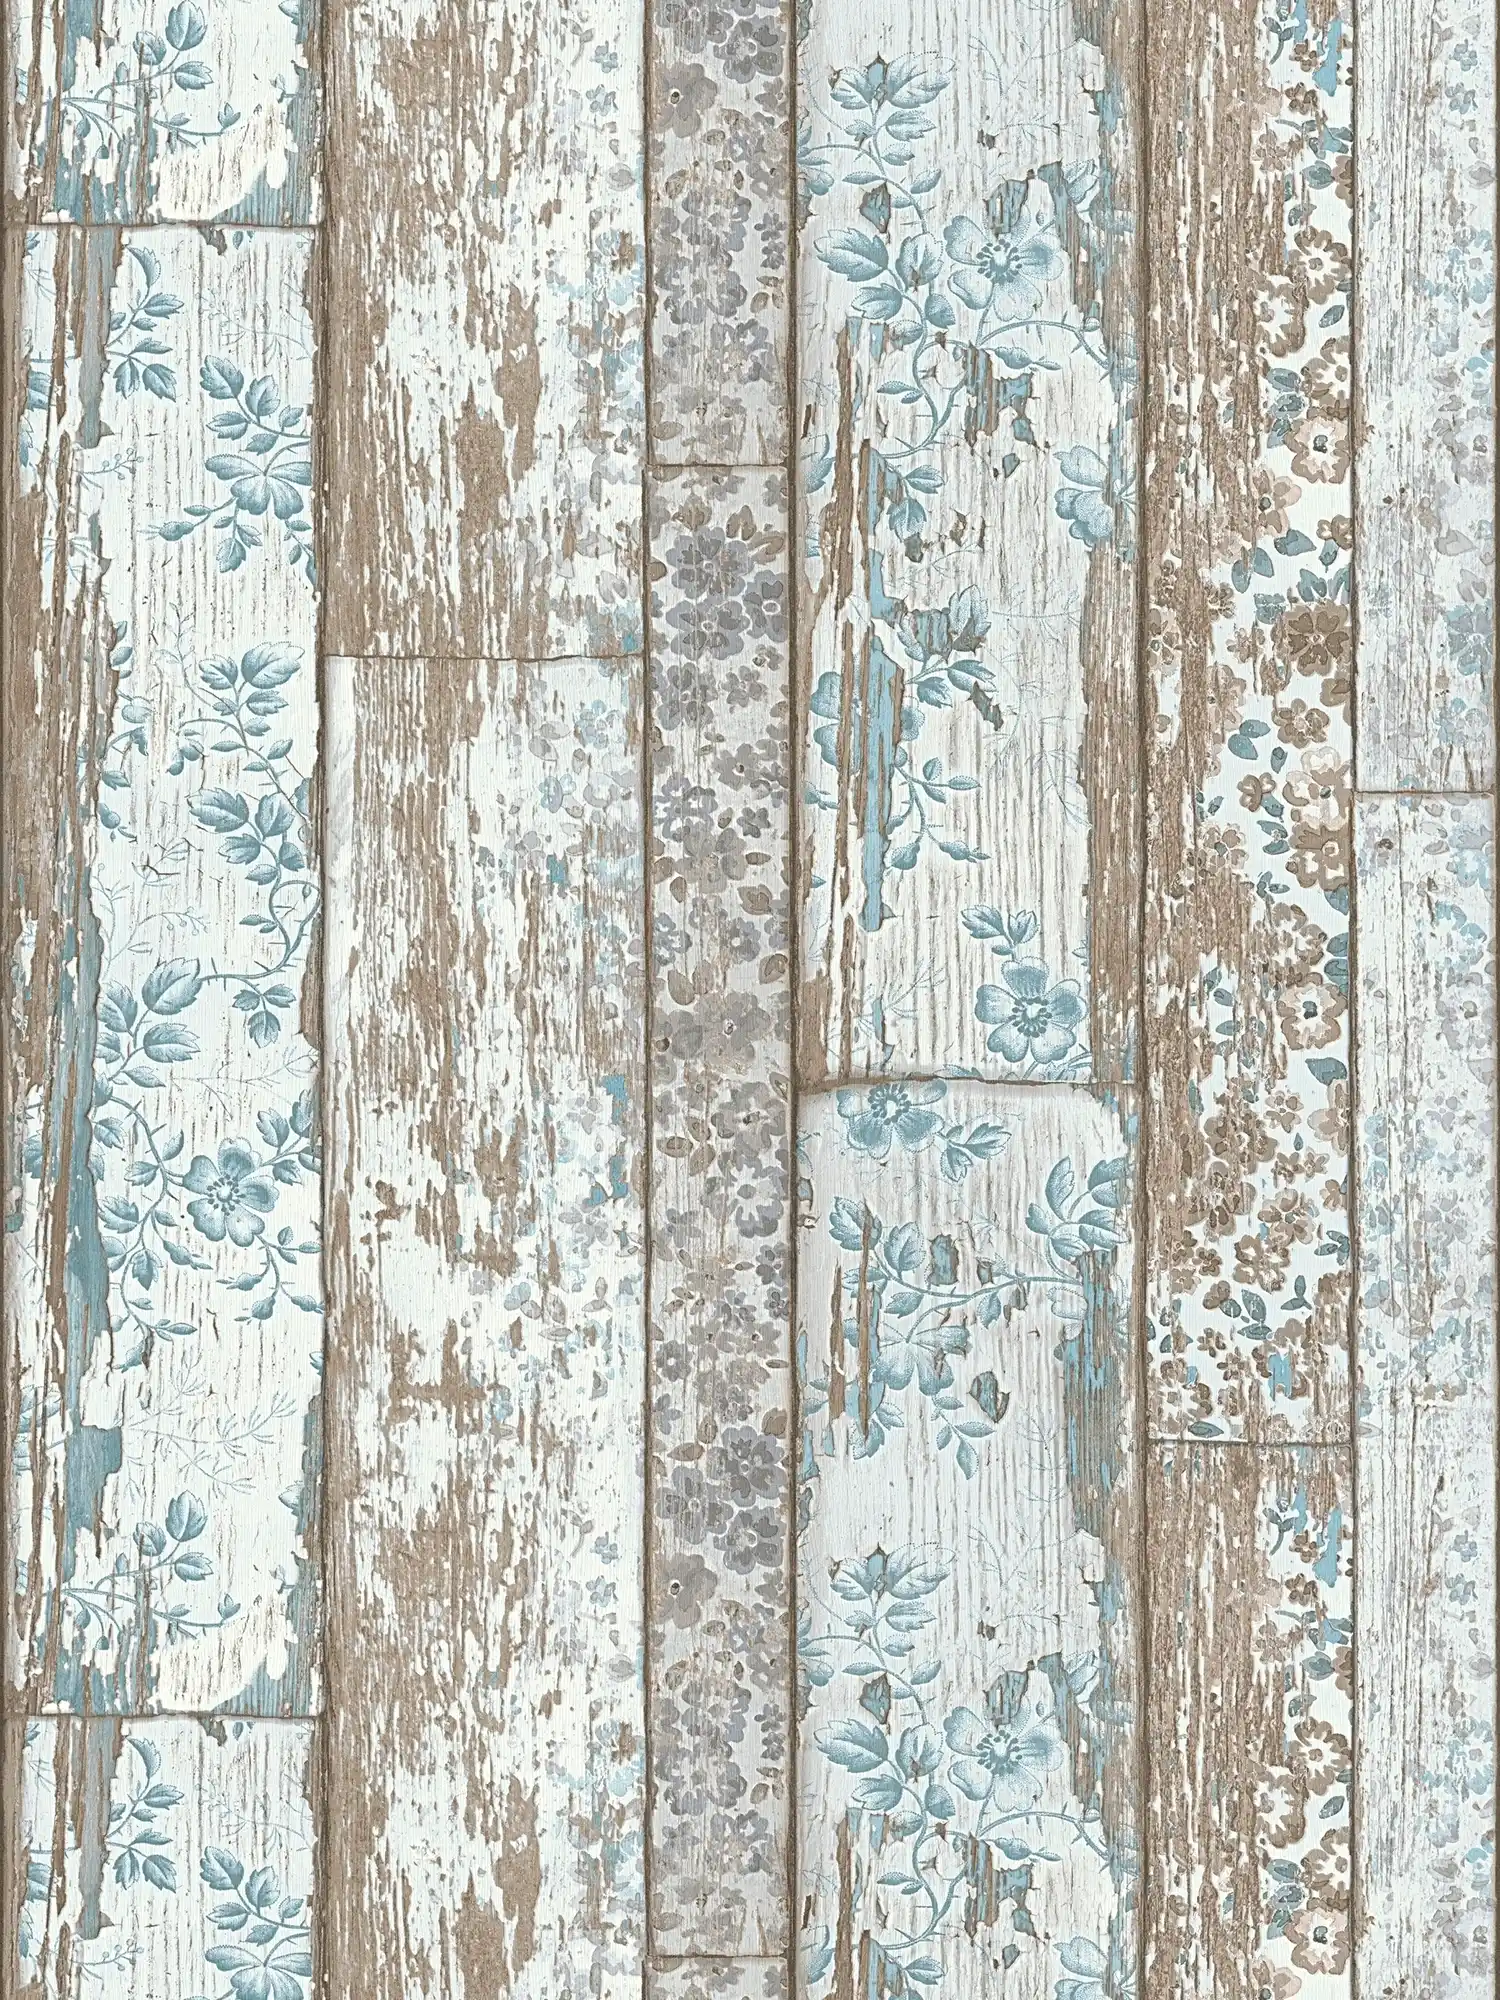 Landhuisbehang plankenlook met vintage bloemenprint - blauw, bruin, grijs
